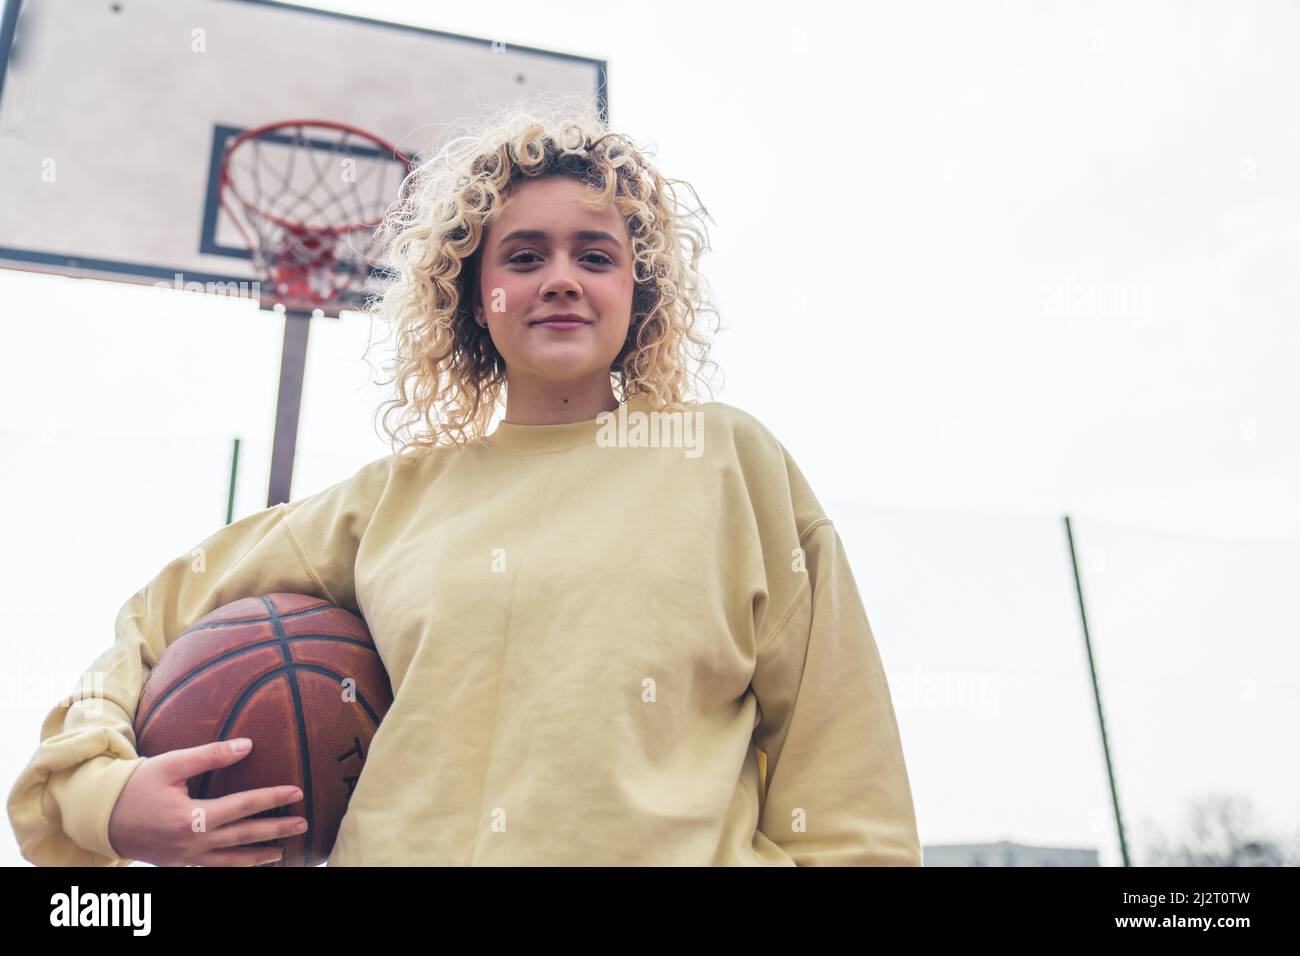 Hübsche junge blonde Frau hält einen Basketball-Ball auf dem Platz und lächelt zu der Kamera Medium shot copy space . Hochwertige Fotos Stockfoto